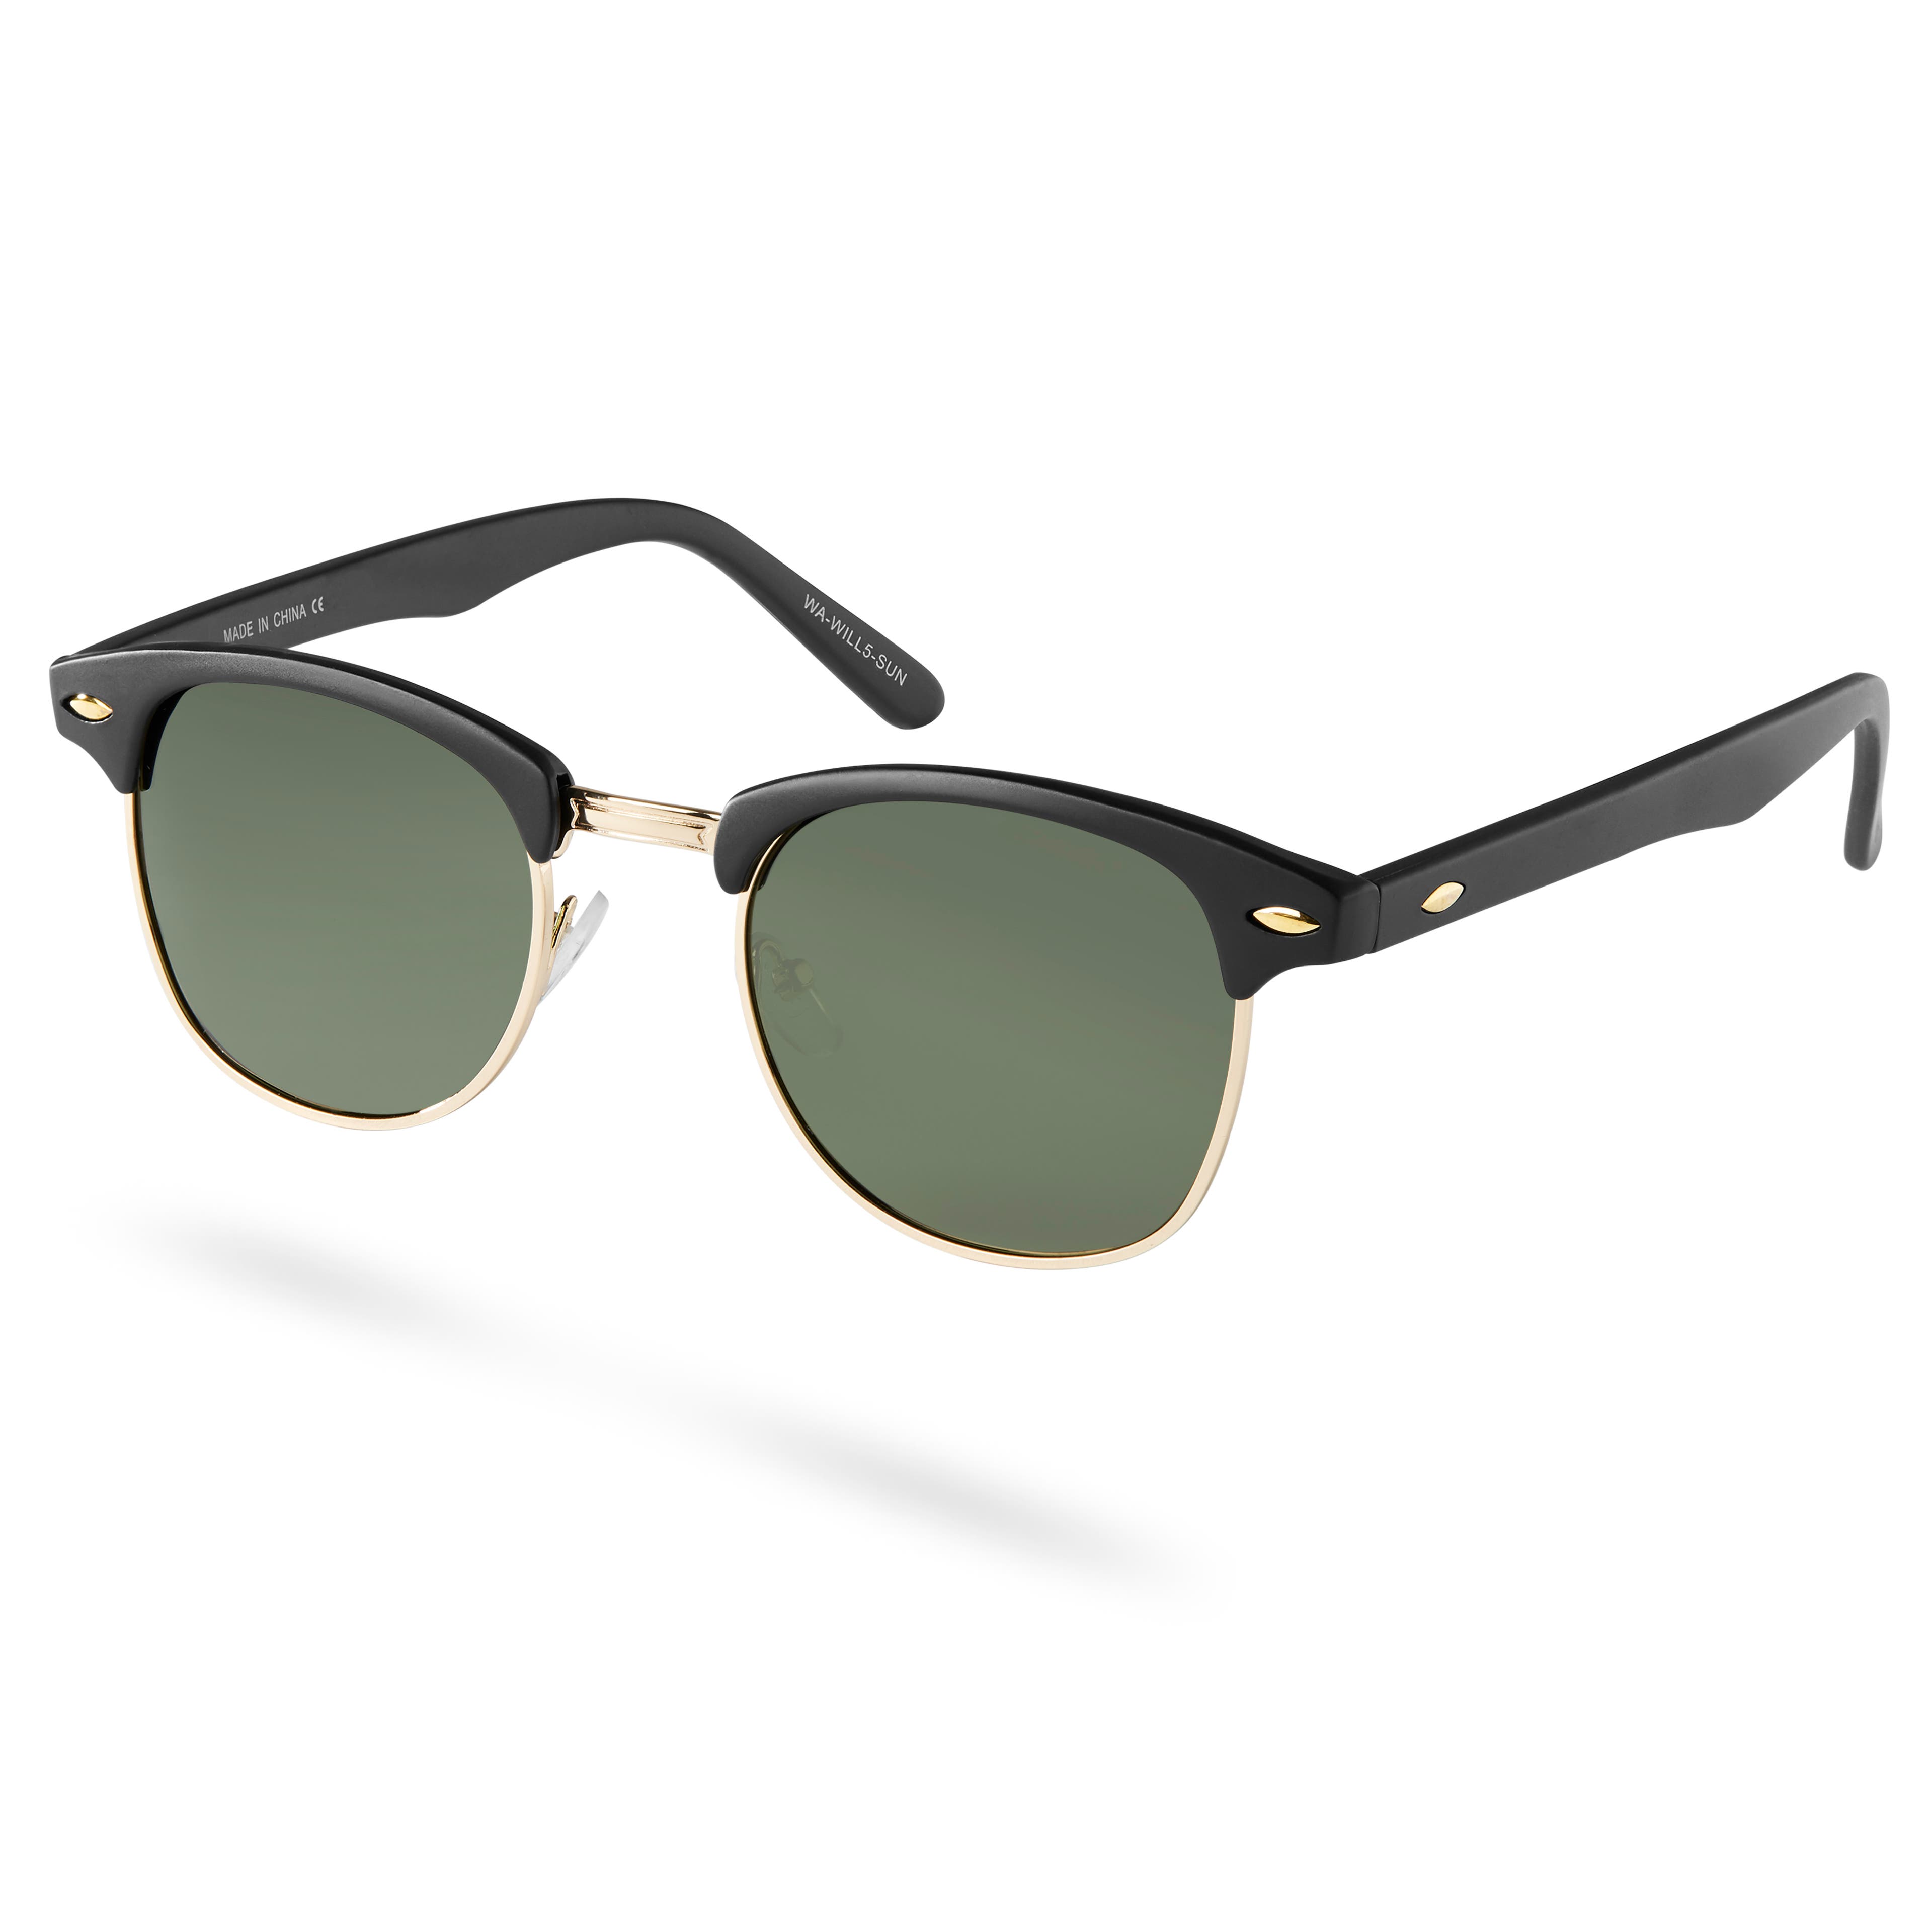 Will Gold-Tone & Green Browline Vista Sunglasses